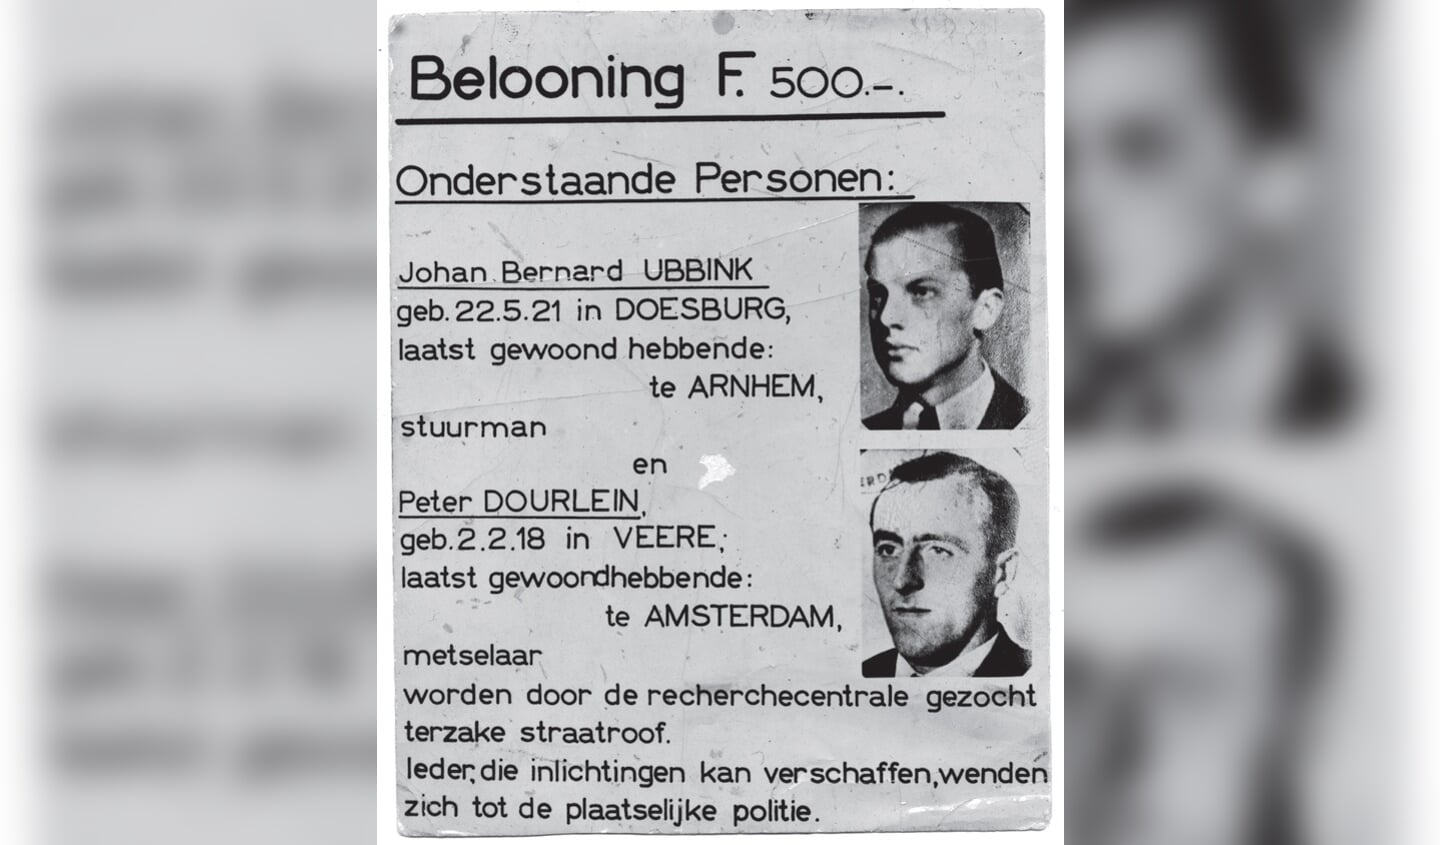 Foto: opsporingsbericht (foto Beeldbank WO2 NIOD)

Het opsporingsbericht dat de Duitsers uit lieten gaan na de ontsnapping van Dourlein en Ubbink. (bron: Beeldbank WO2 NIOD)